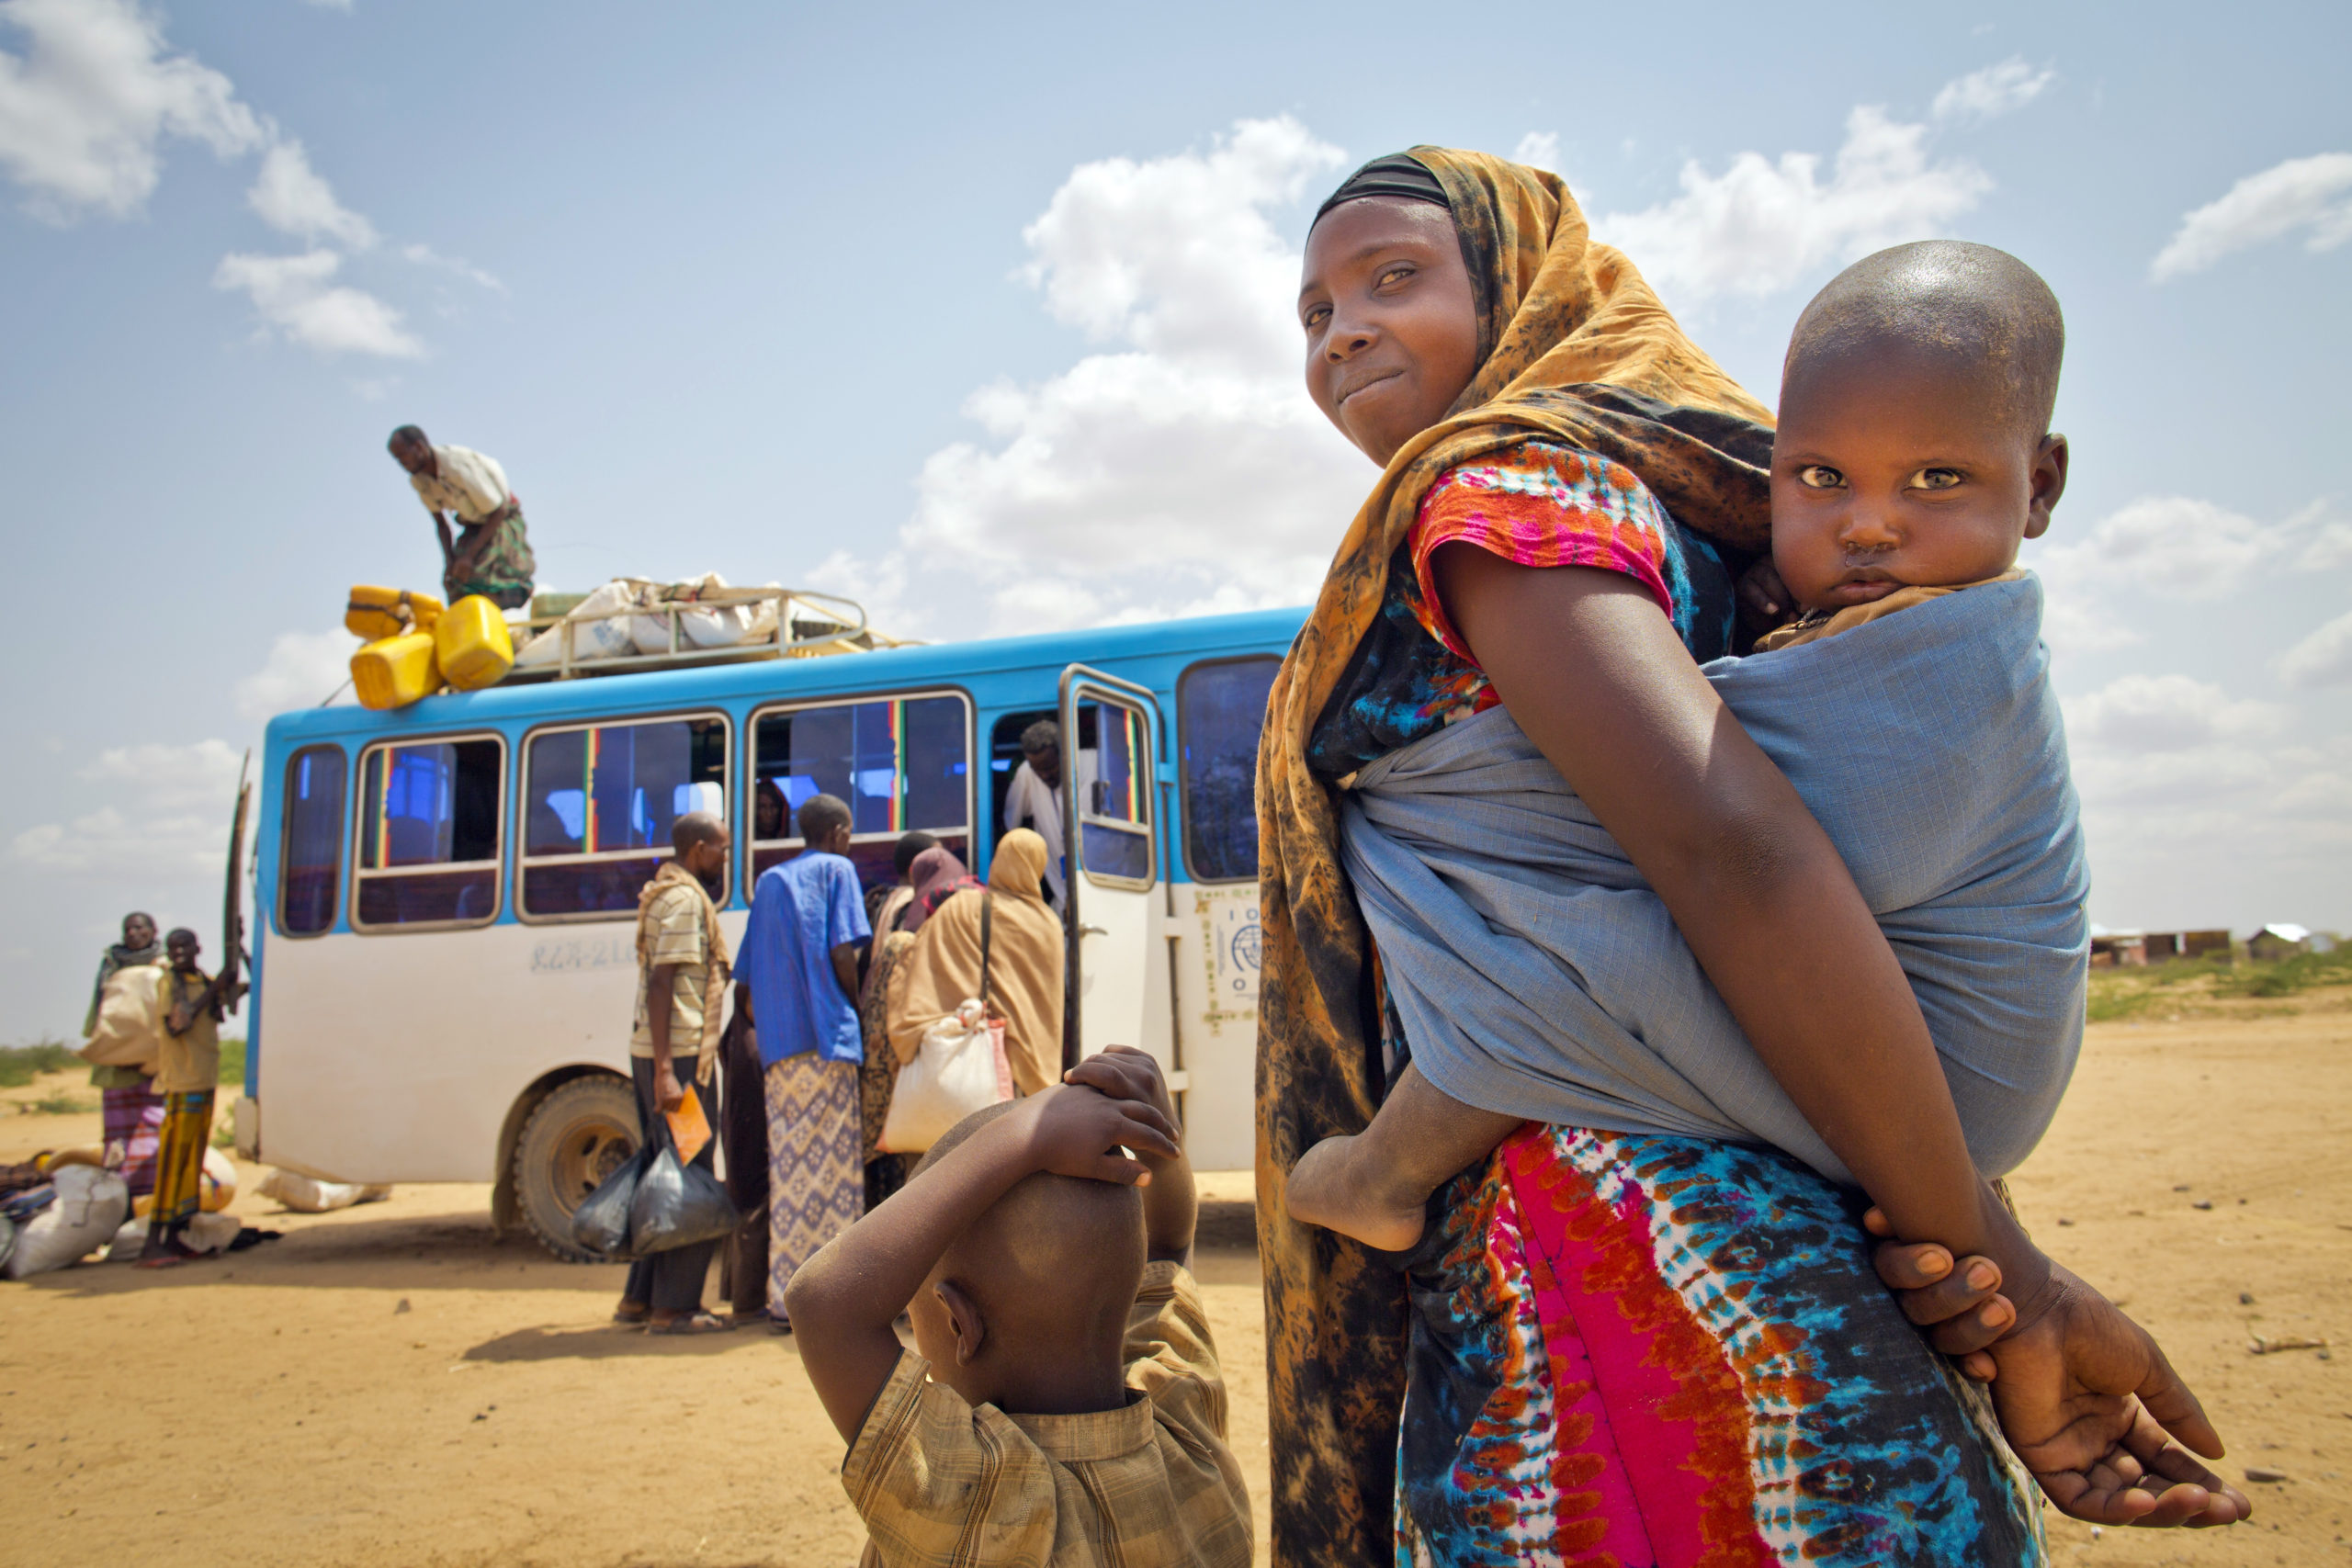 En kvinne med et barn på ryggen og et lite barn foran seg ser mot kamera. I bakgrunnen ser vi en buss som lastes.